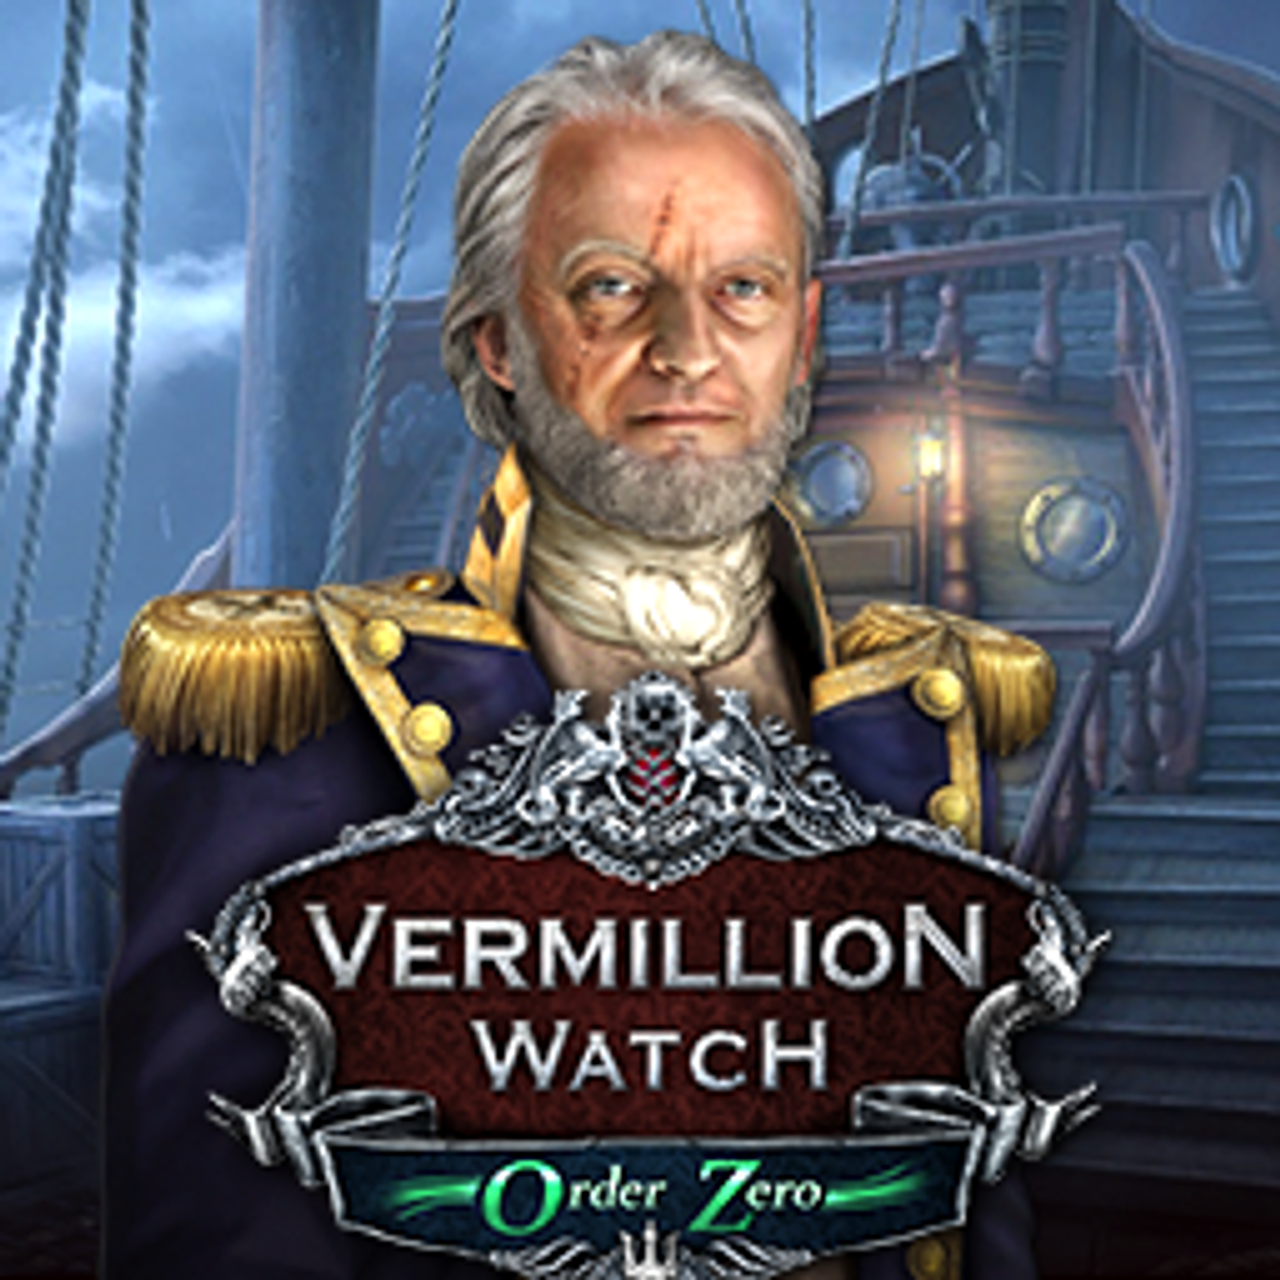 Vermillion Watch: Order Zero